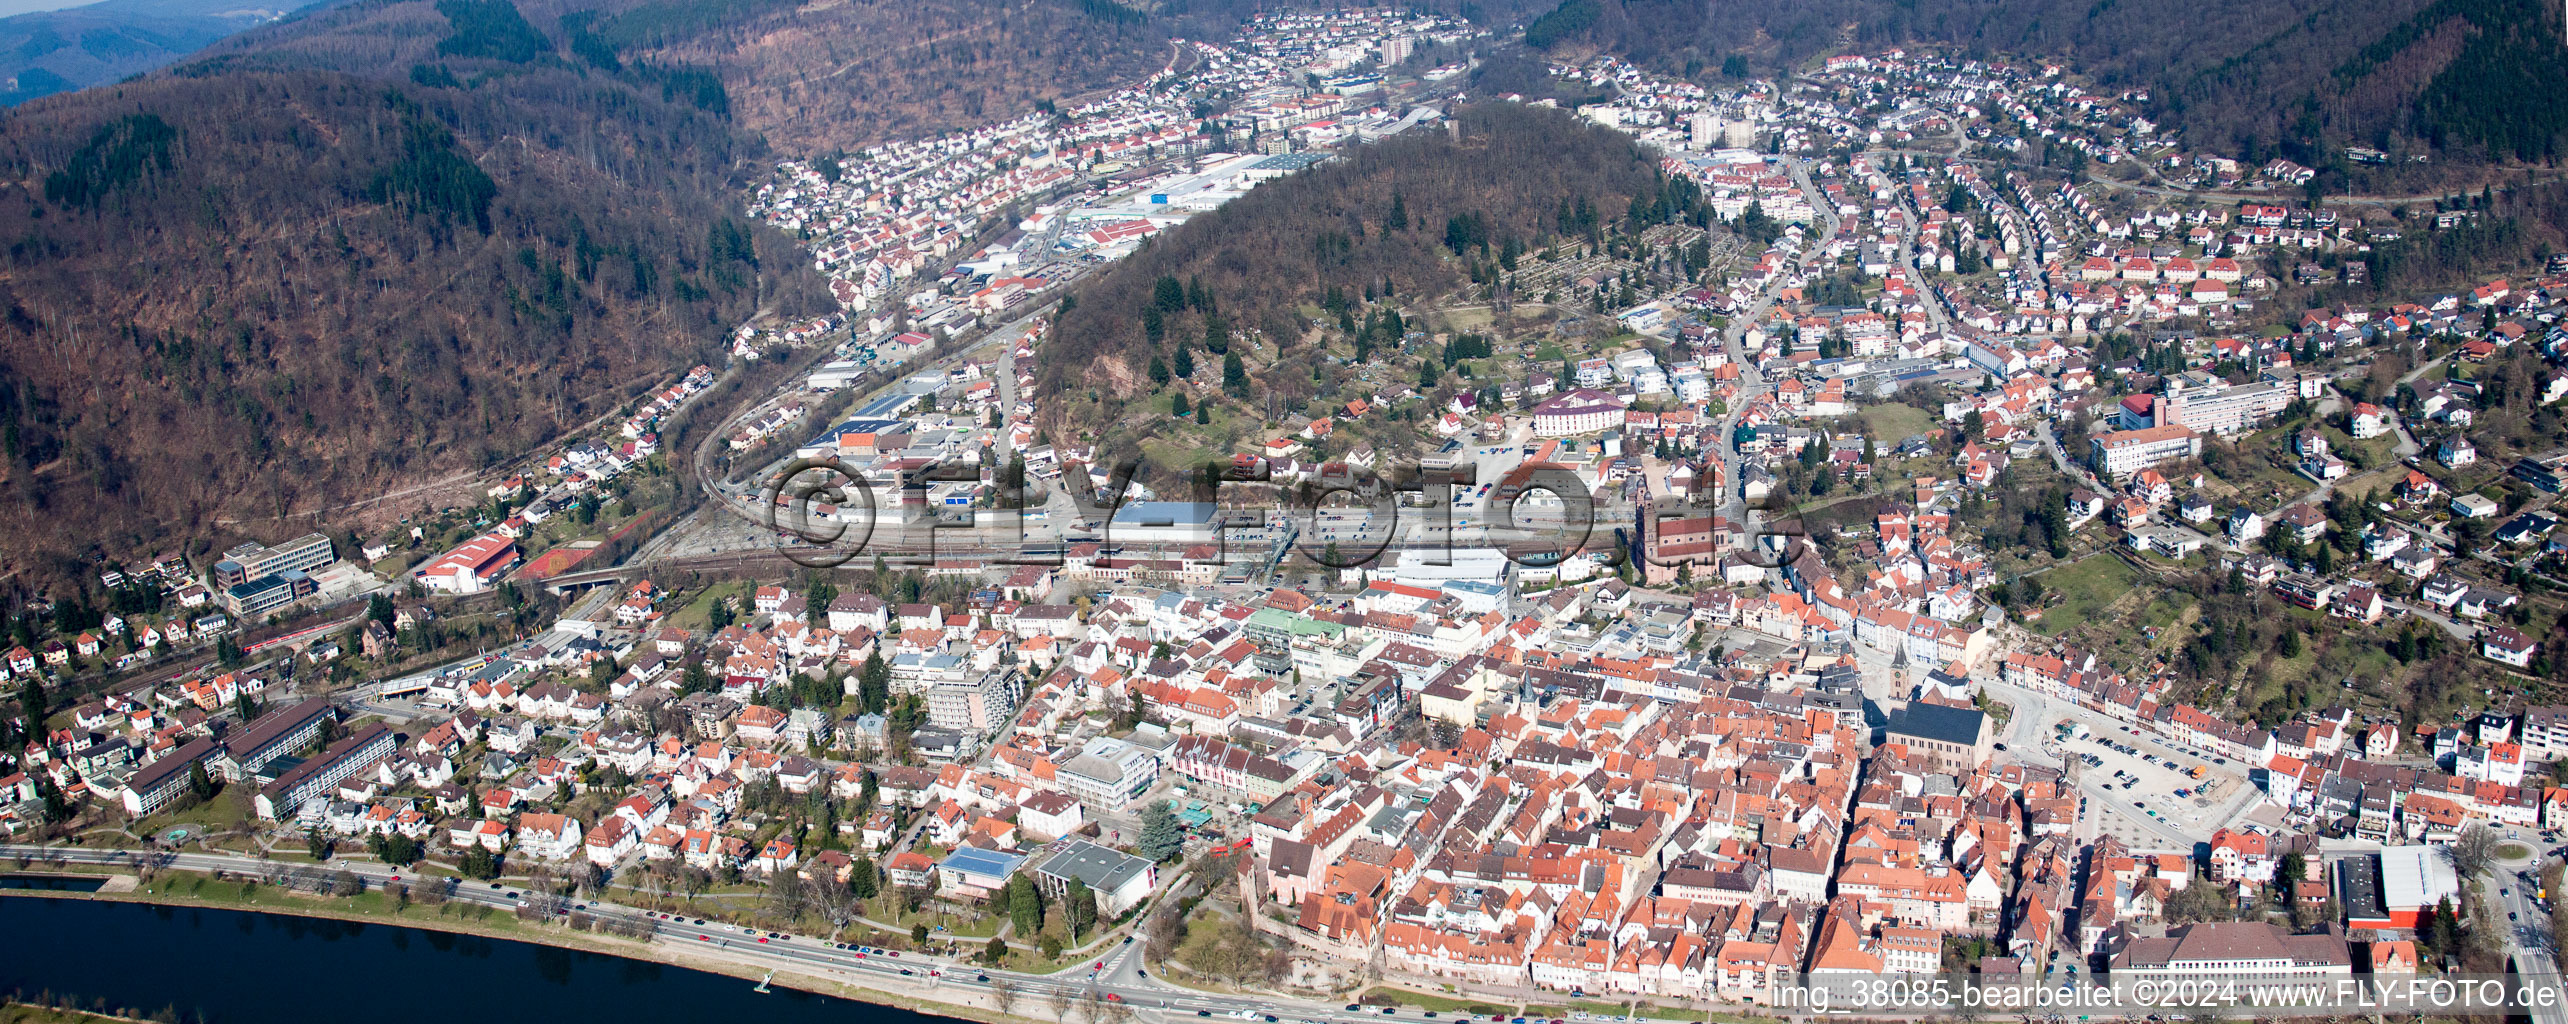 Luftbild von Panorama Perspektive des Ortskern am Uferbereich des Neckar - Flußverlaufes in Eberbach im Bundesland Baden-Württemberg, Deutschland